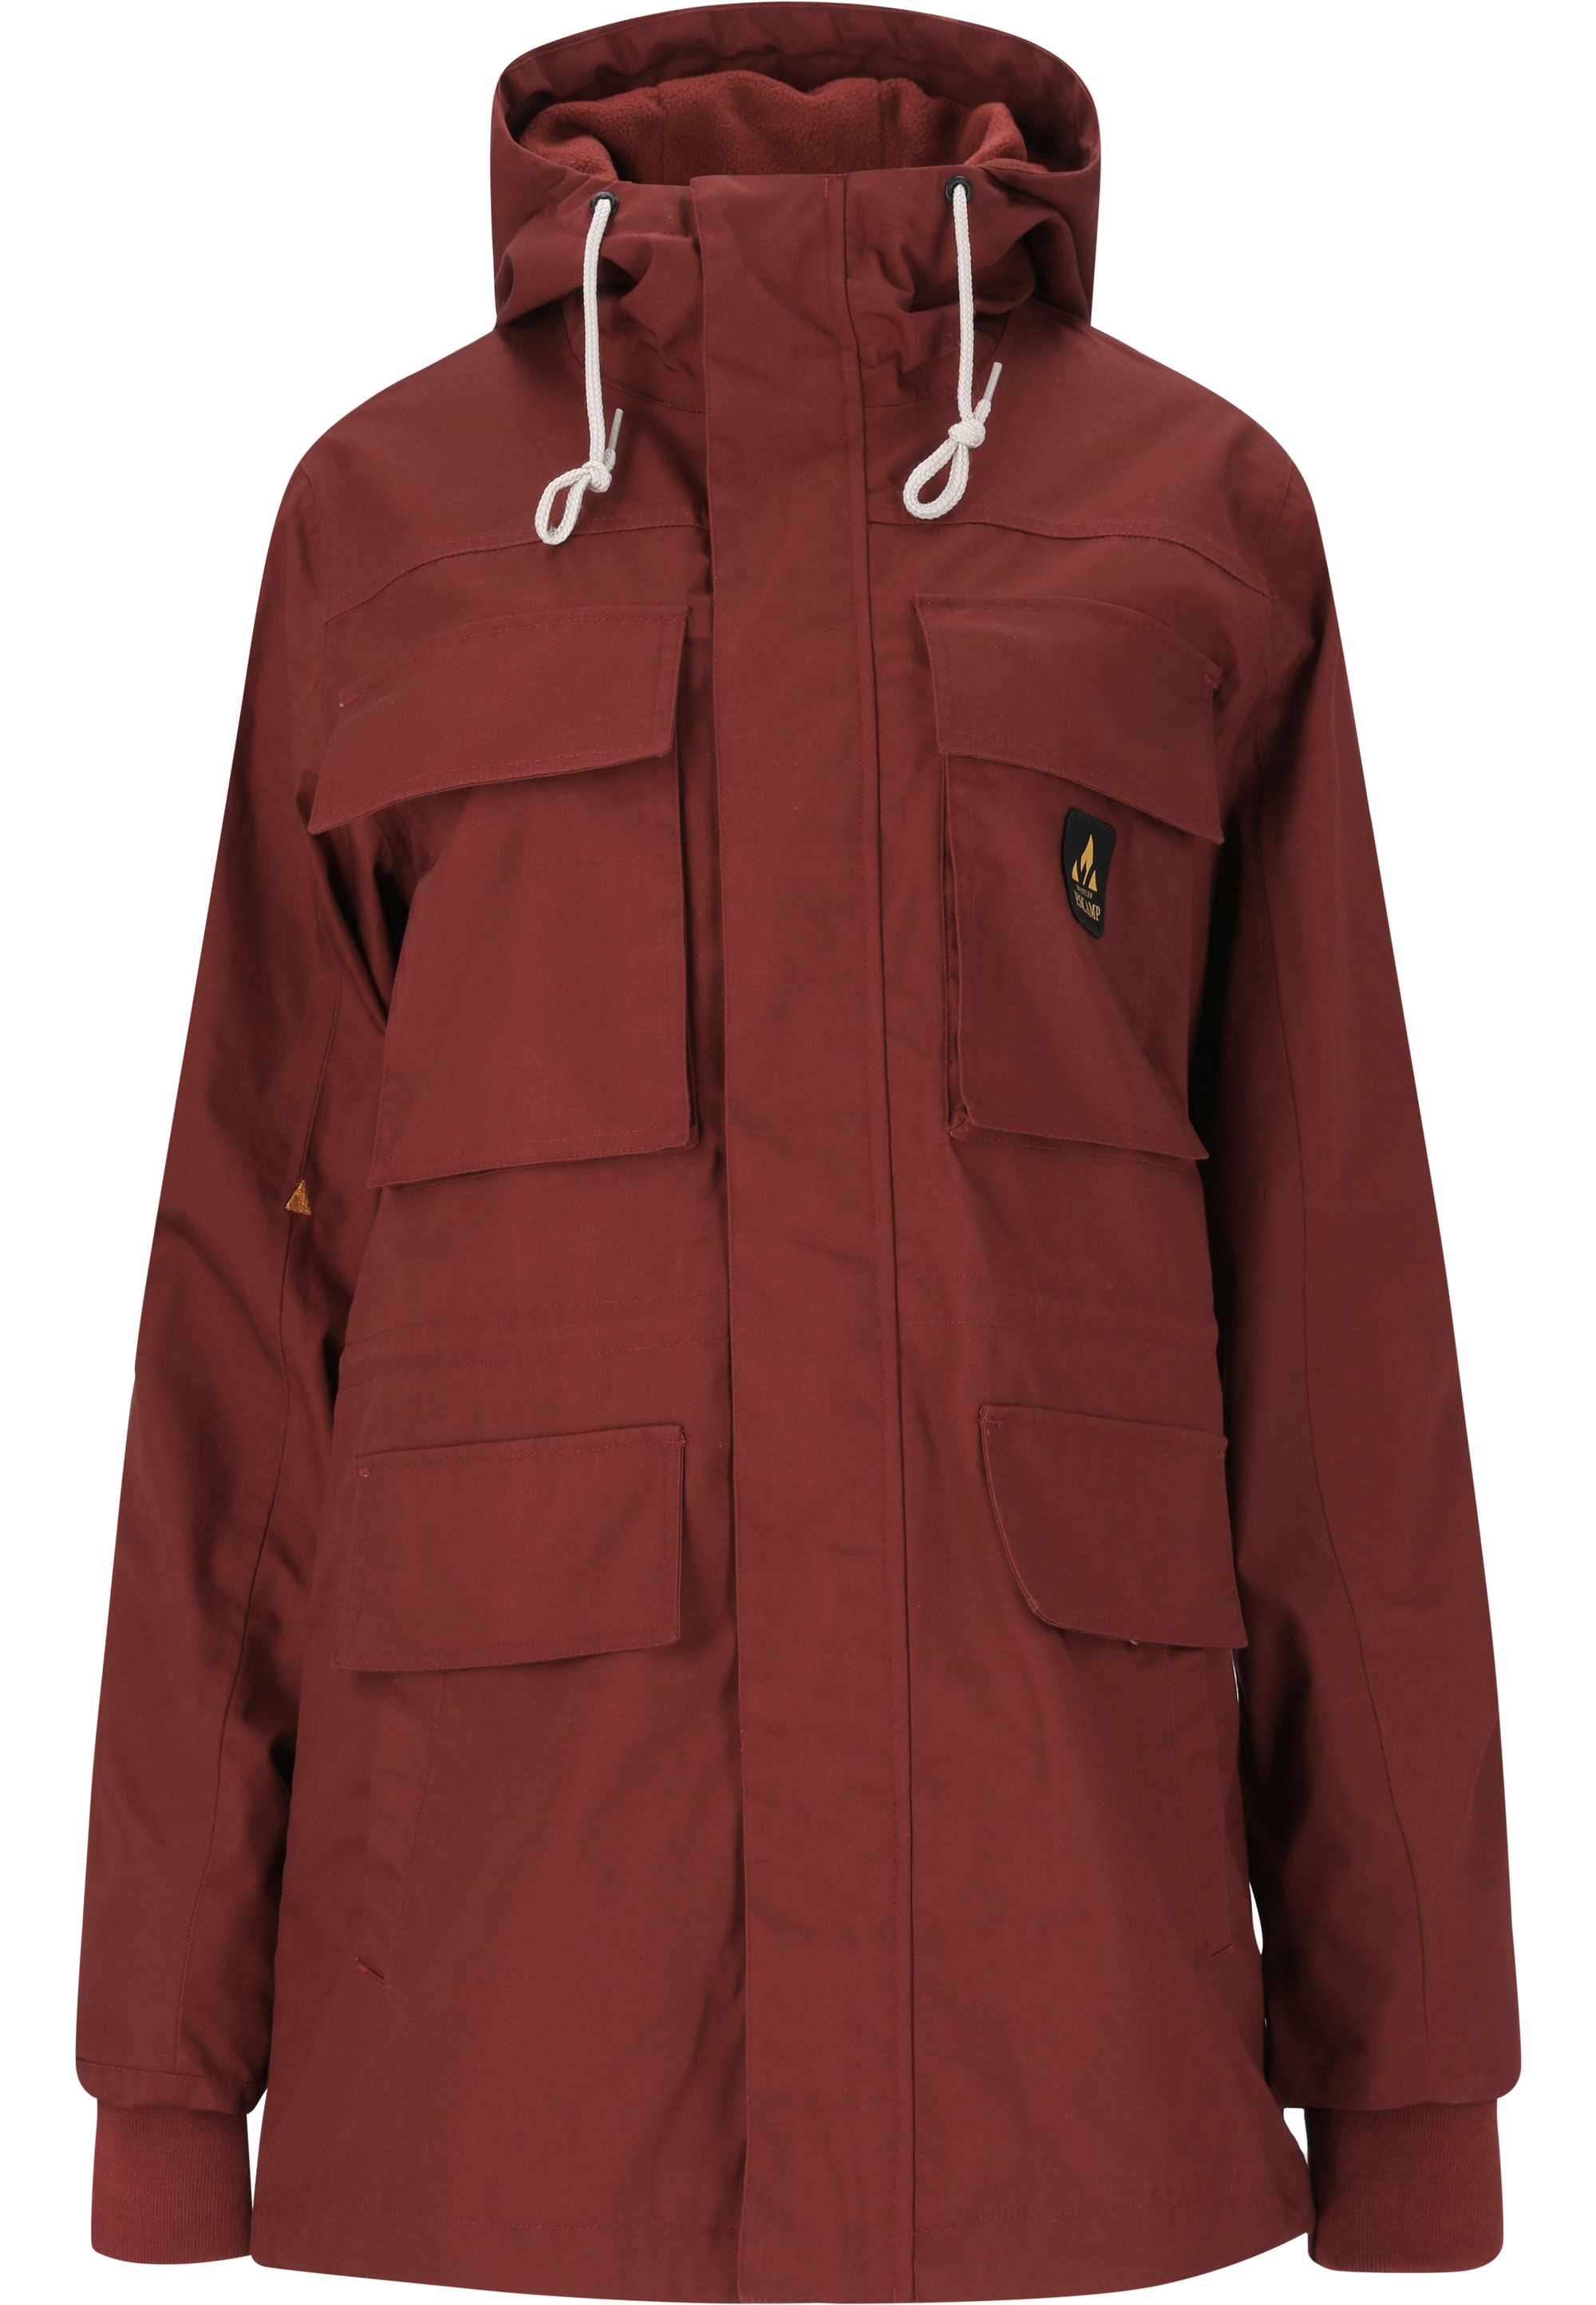 Спортивная куртка Whistler Jacke Canon, цвет 4174 Madder Brown